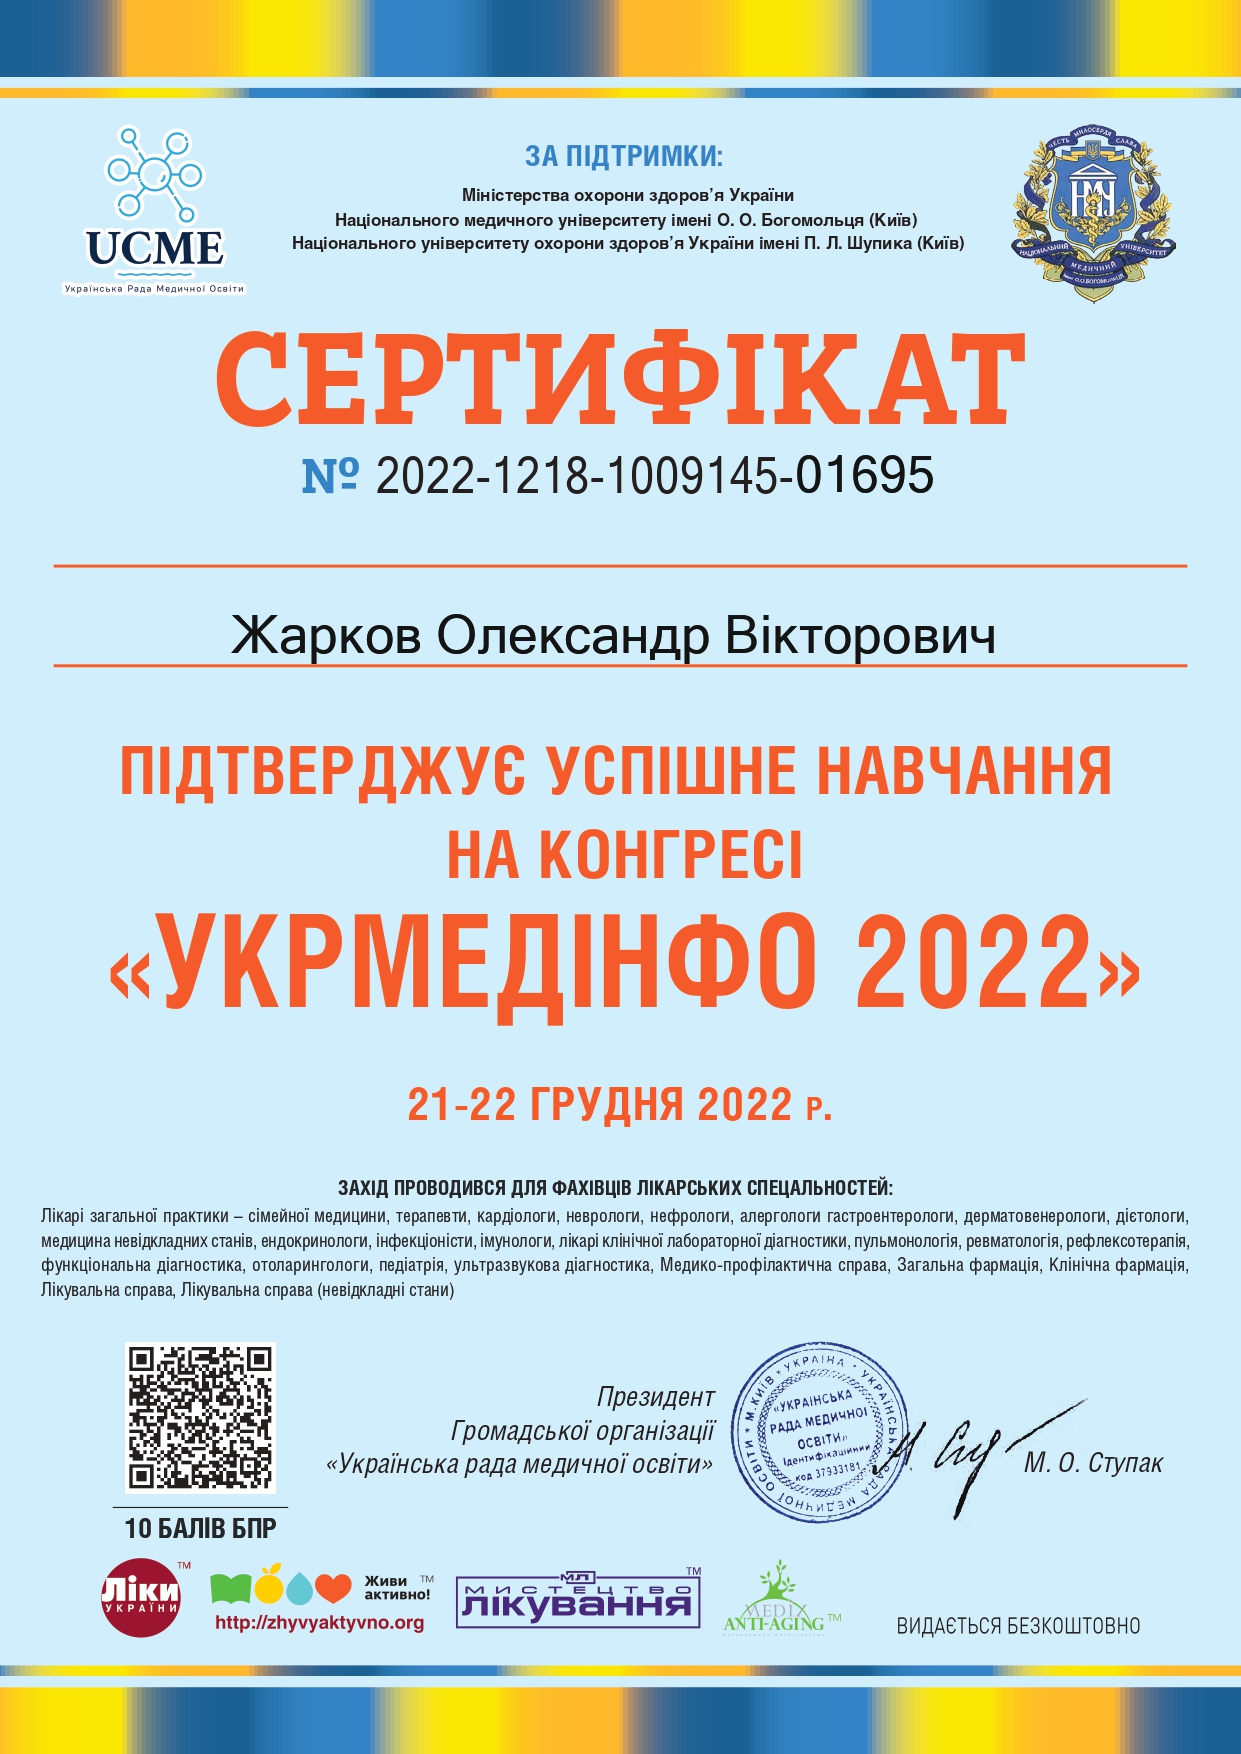 Укрмединфо 2022